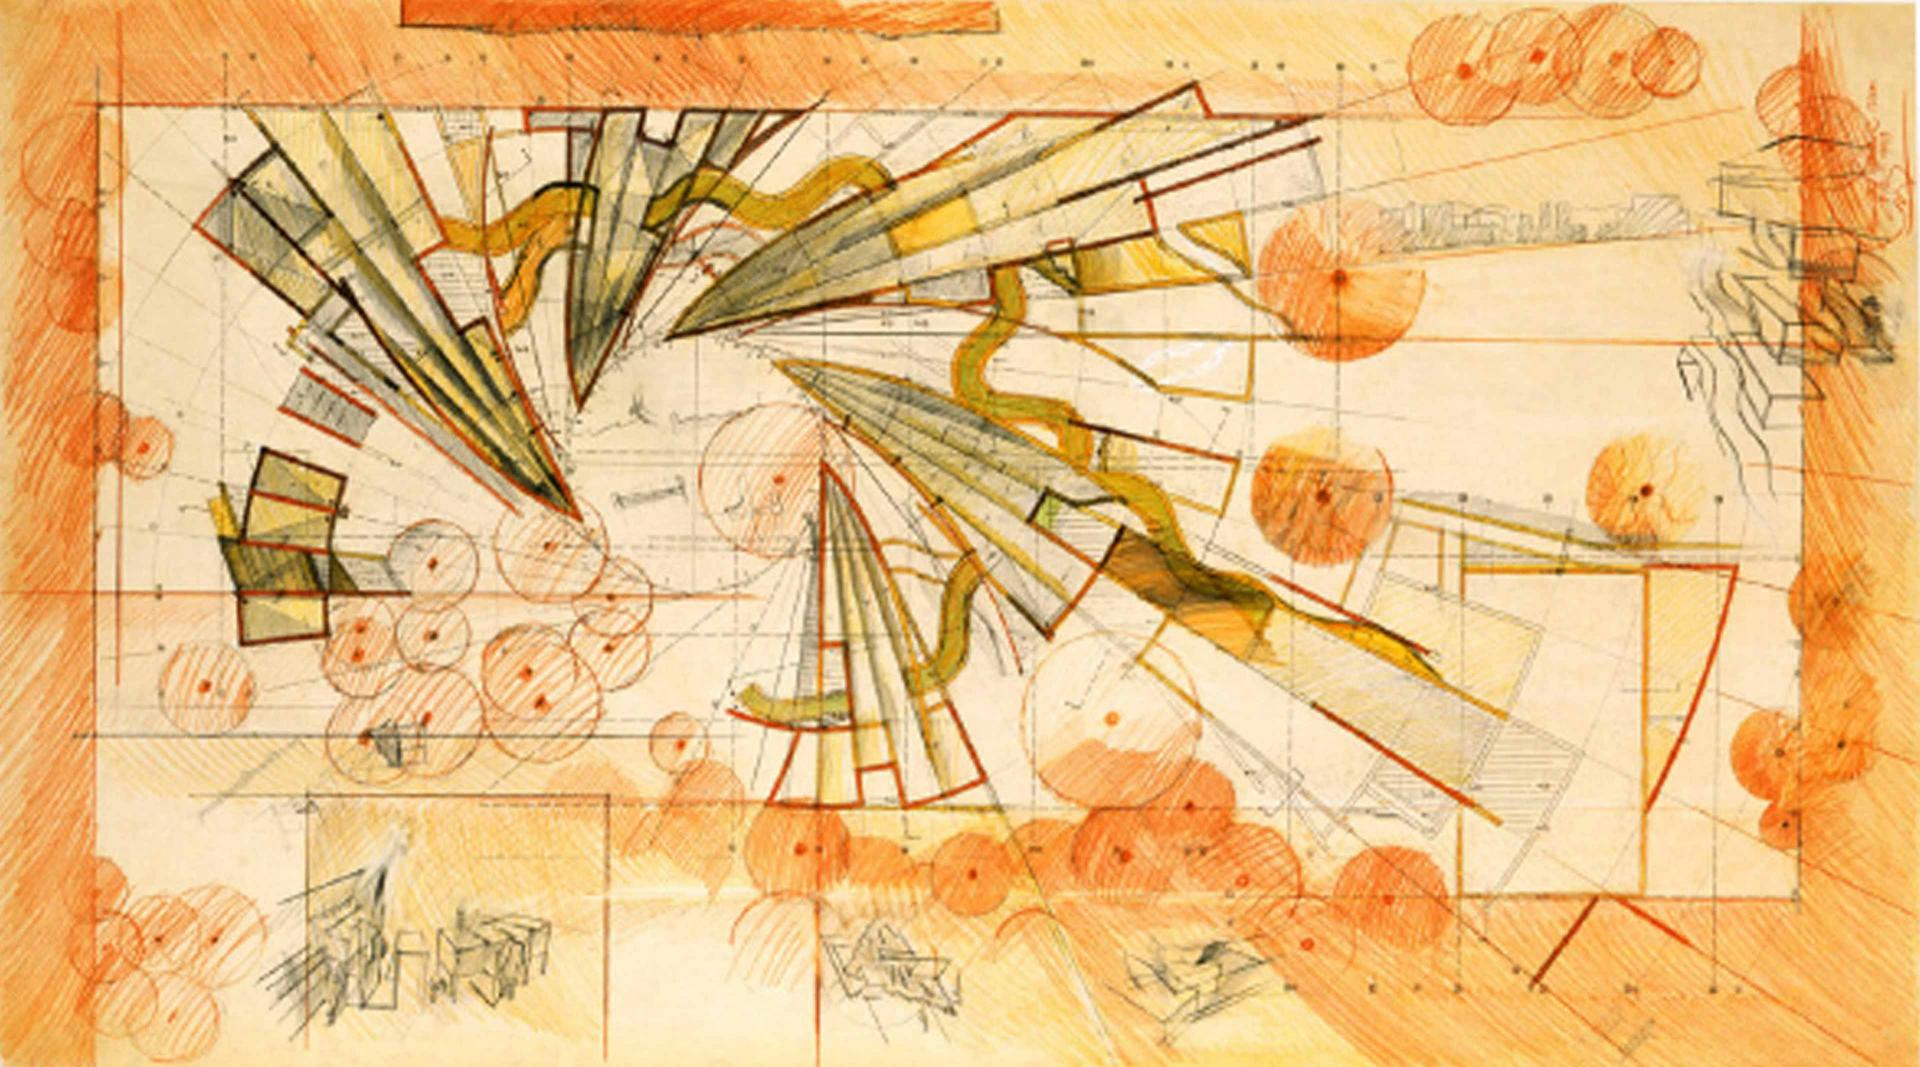 Farbige Entwurfszeichnung von Zvi Hecker mit Spirale aus Keilen, Halbzylindern und Pyramiden